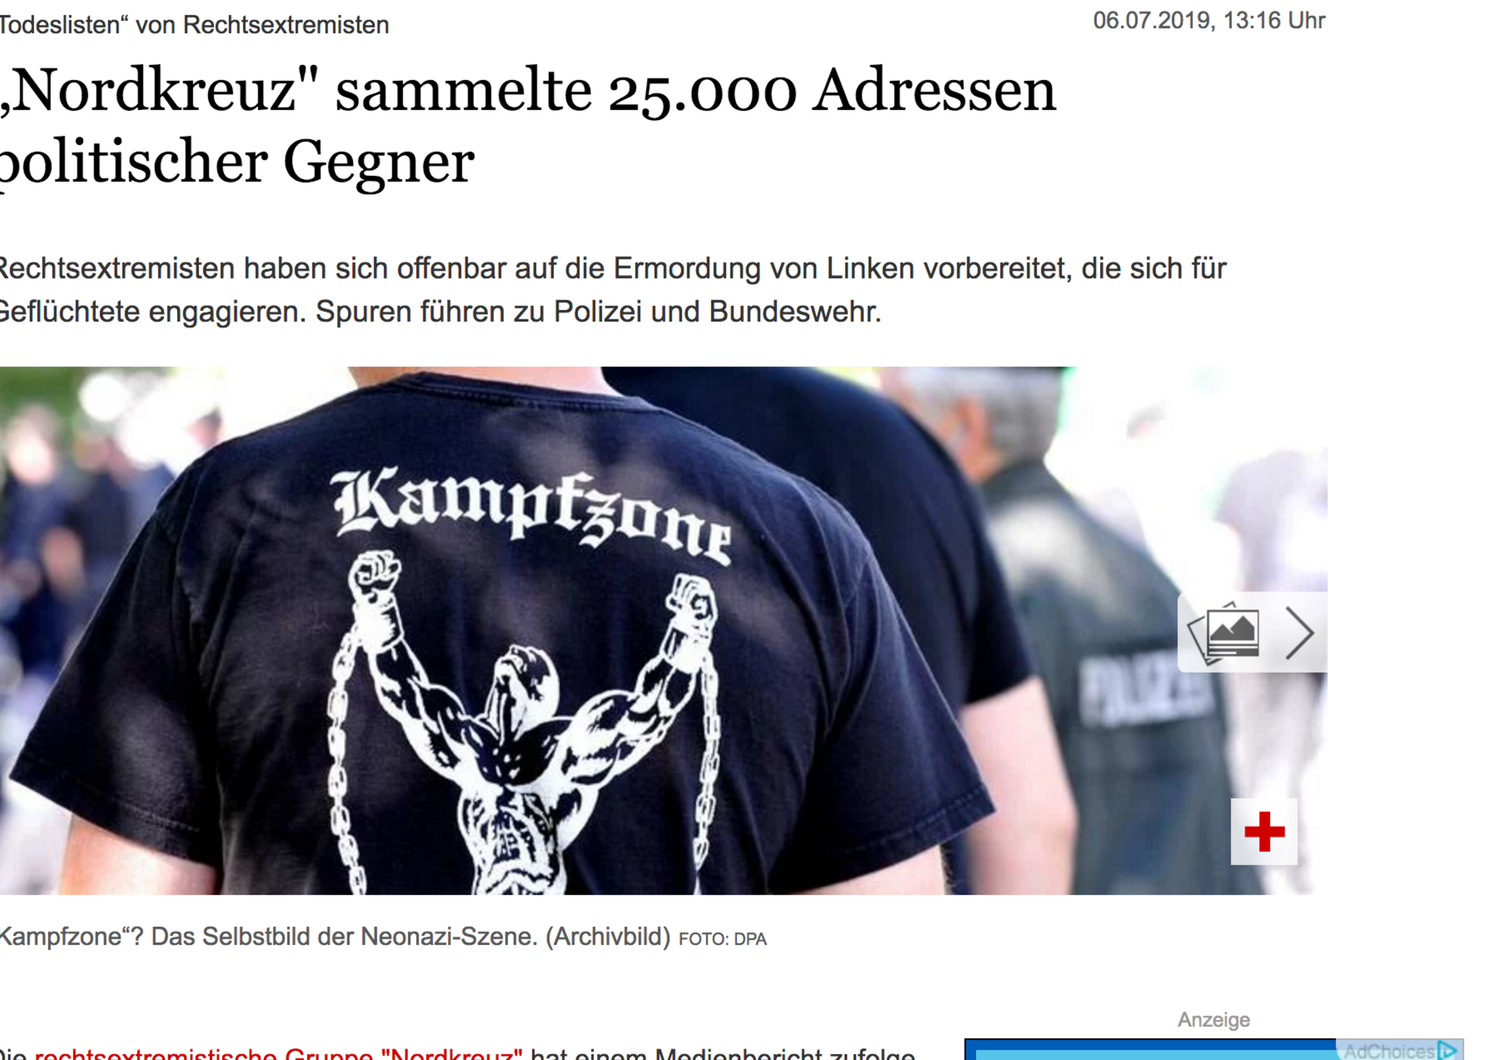 Il sito di Der Tagesspiegel